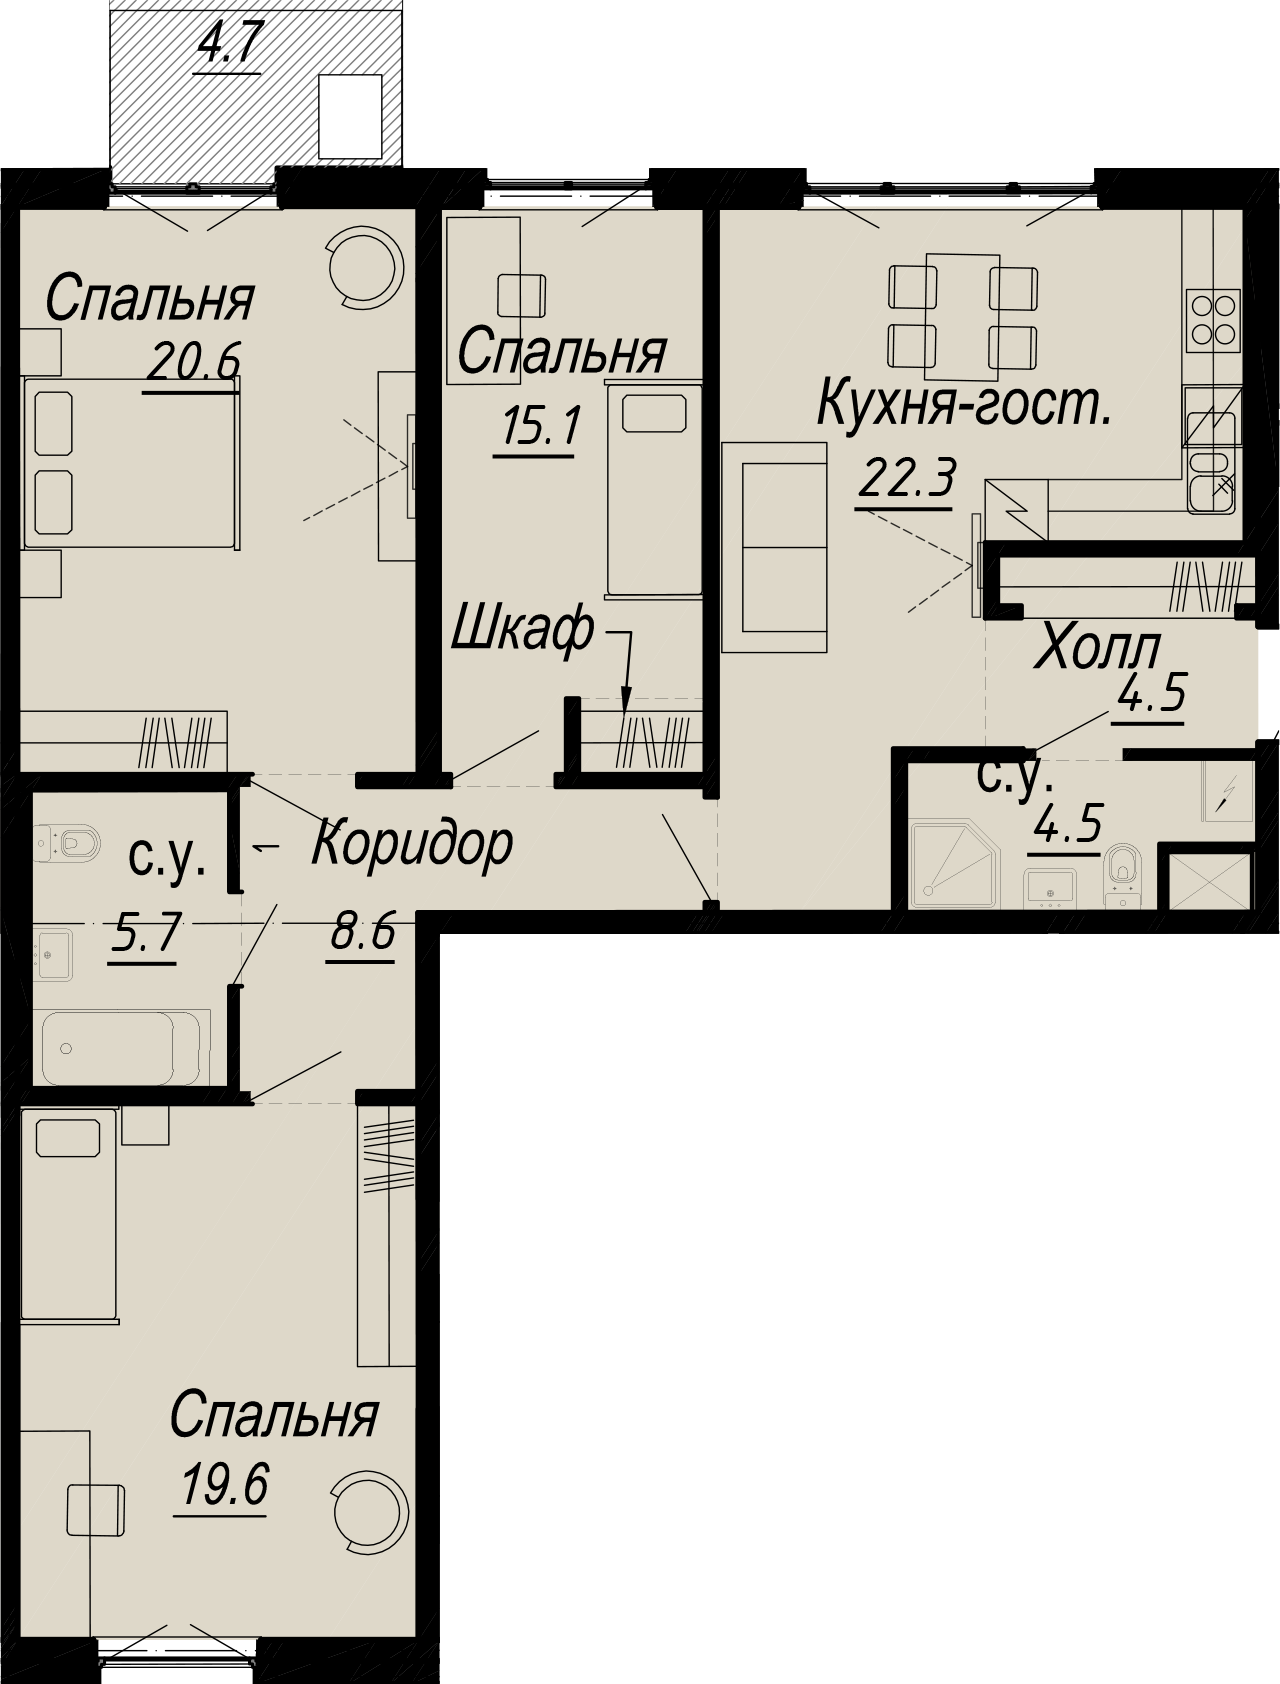 3-комнатная квартира  №5-5 в Meltzer Hall: 105.08 м², этаж 5 - купить в Санкт-Петербурге